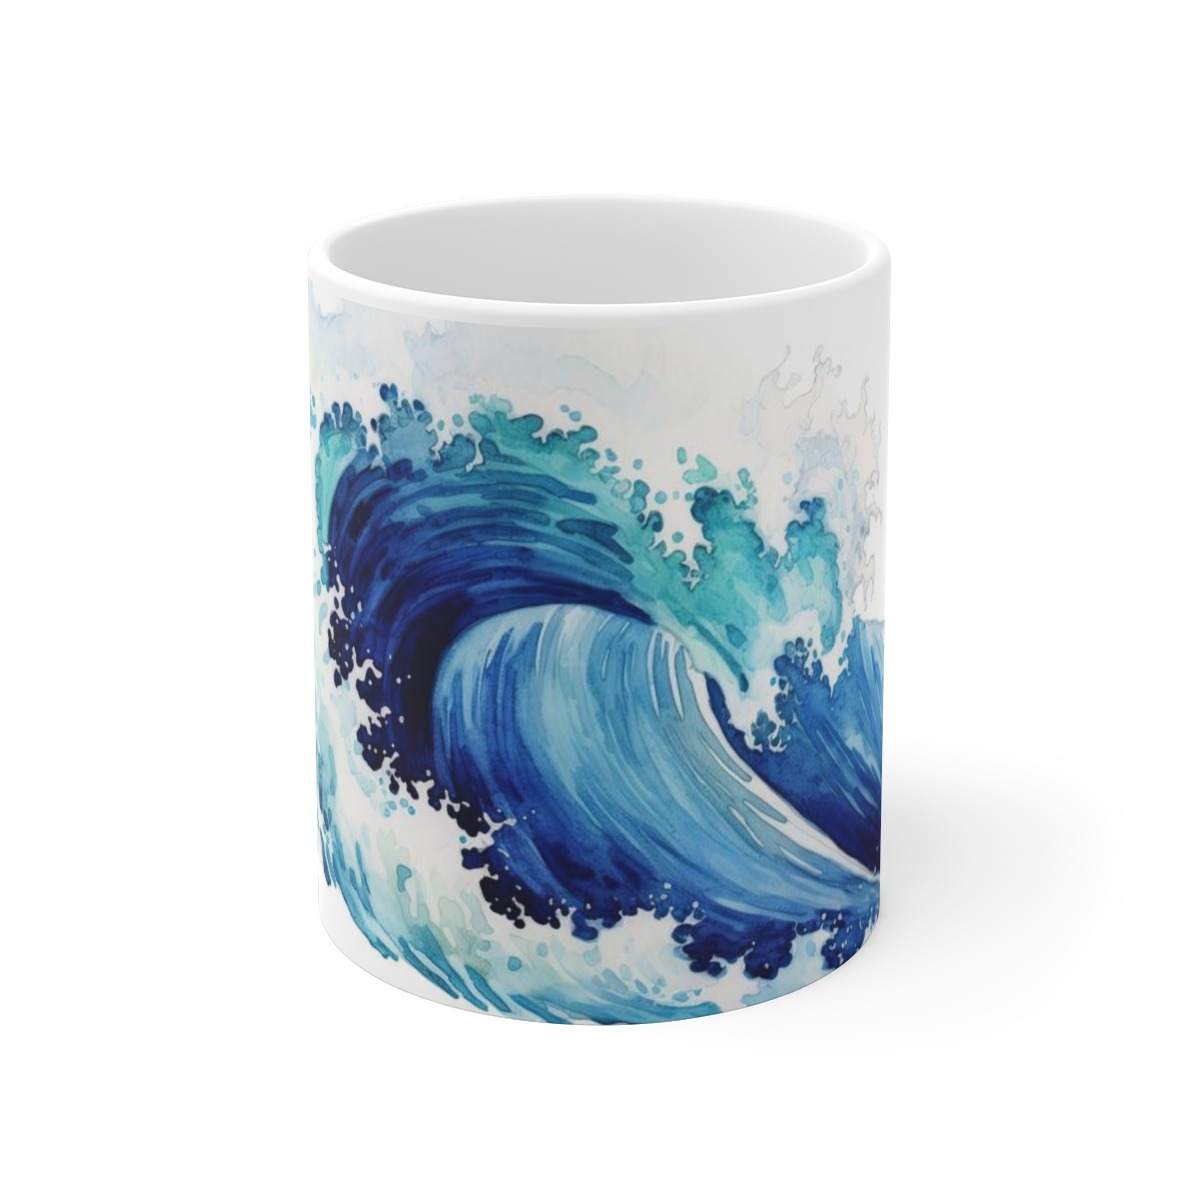 Ozeanische Fantasien: Keramikbecher mit blauen Wellen im Aquarellstil